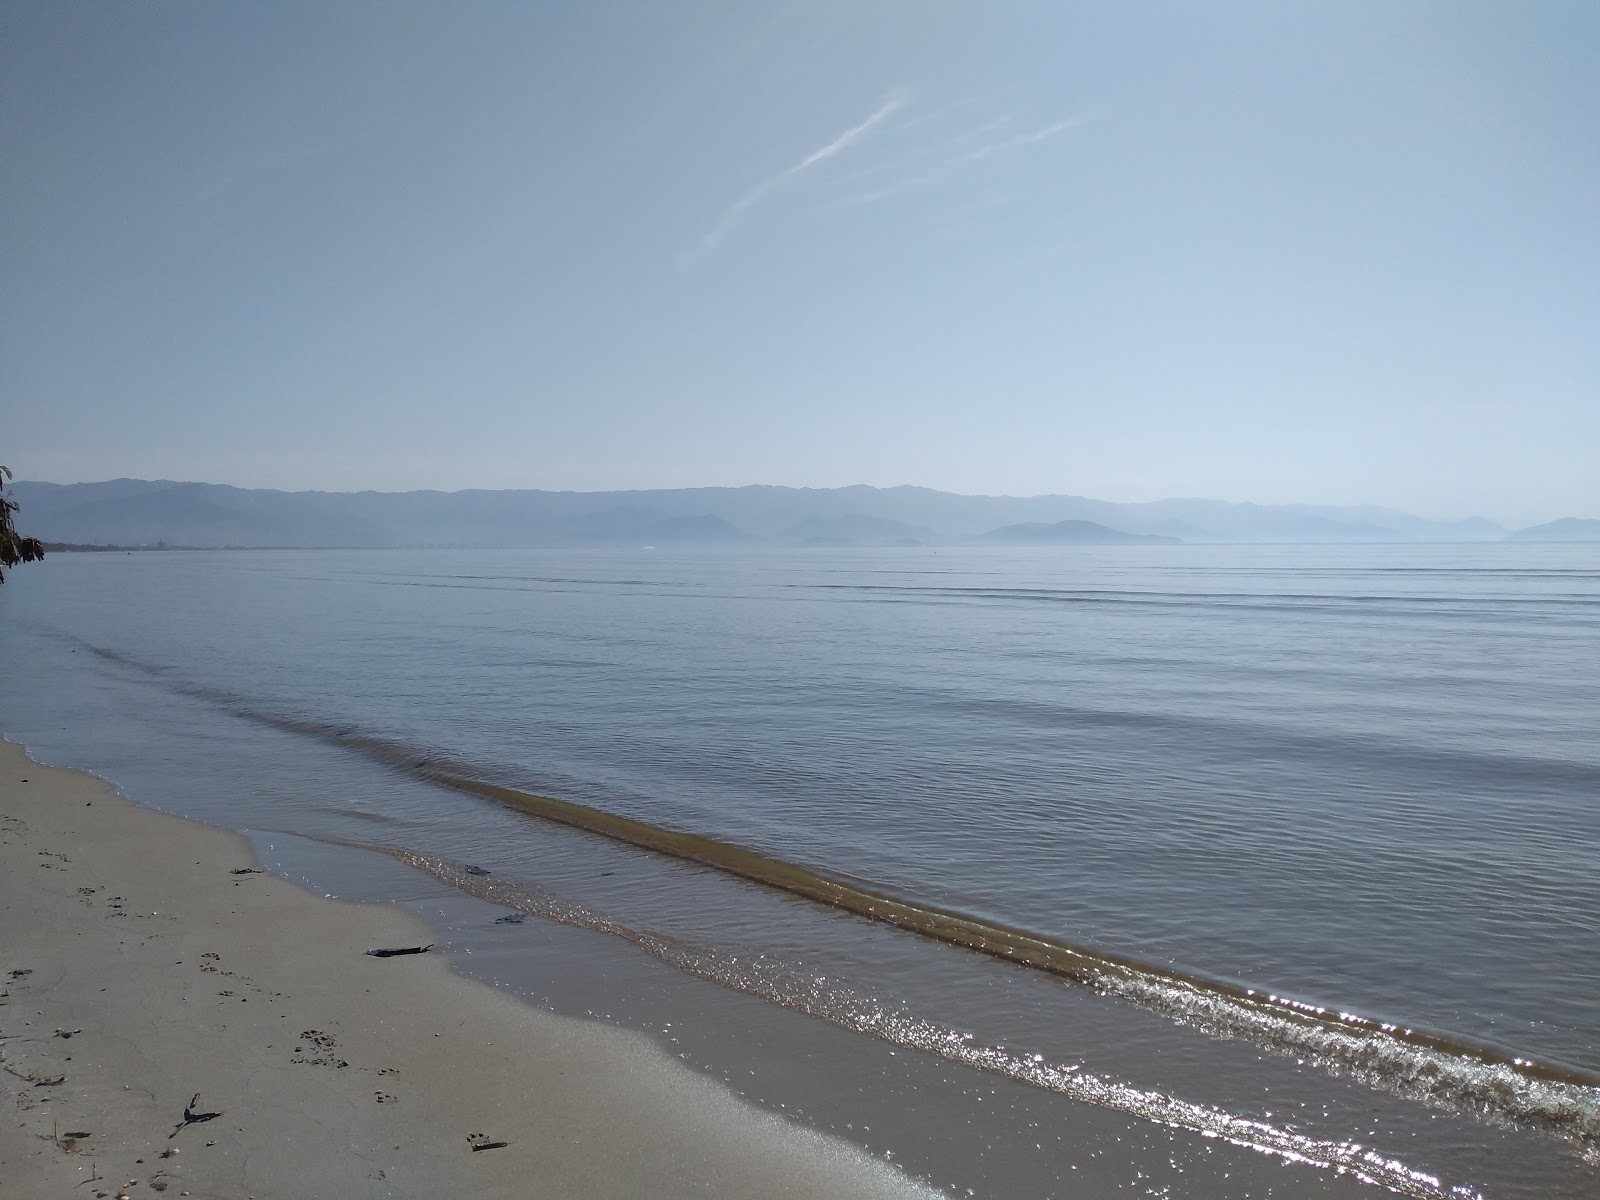 恩塞阿达海滩的照片 带有碧绿色纯水表面